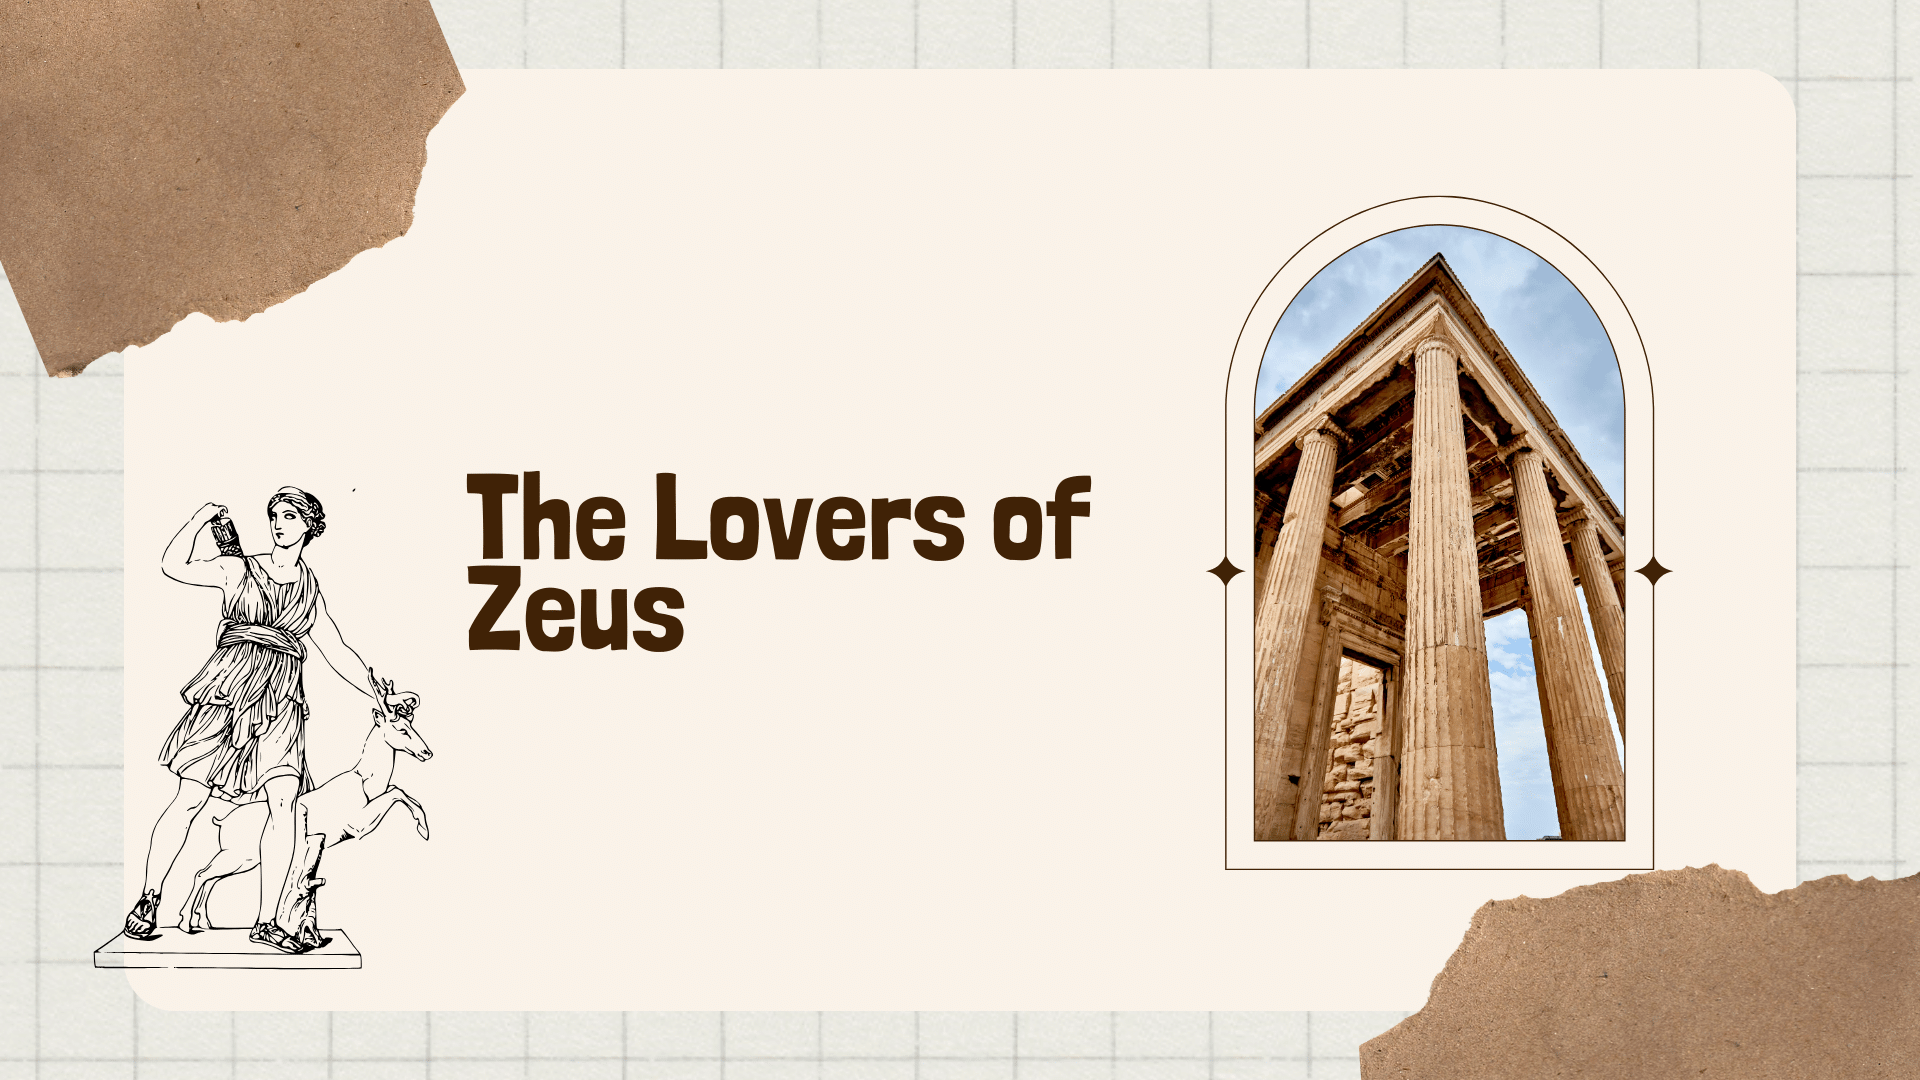 The Lovers of Zeus